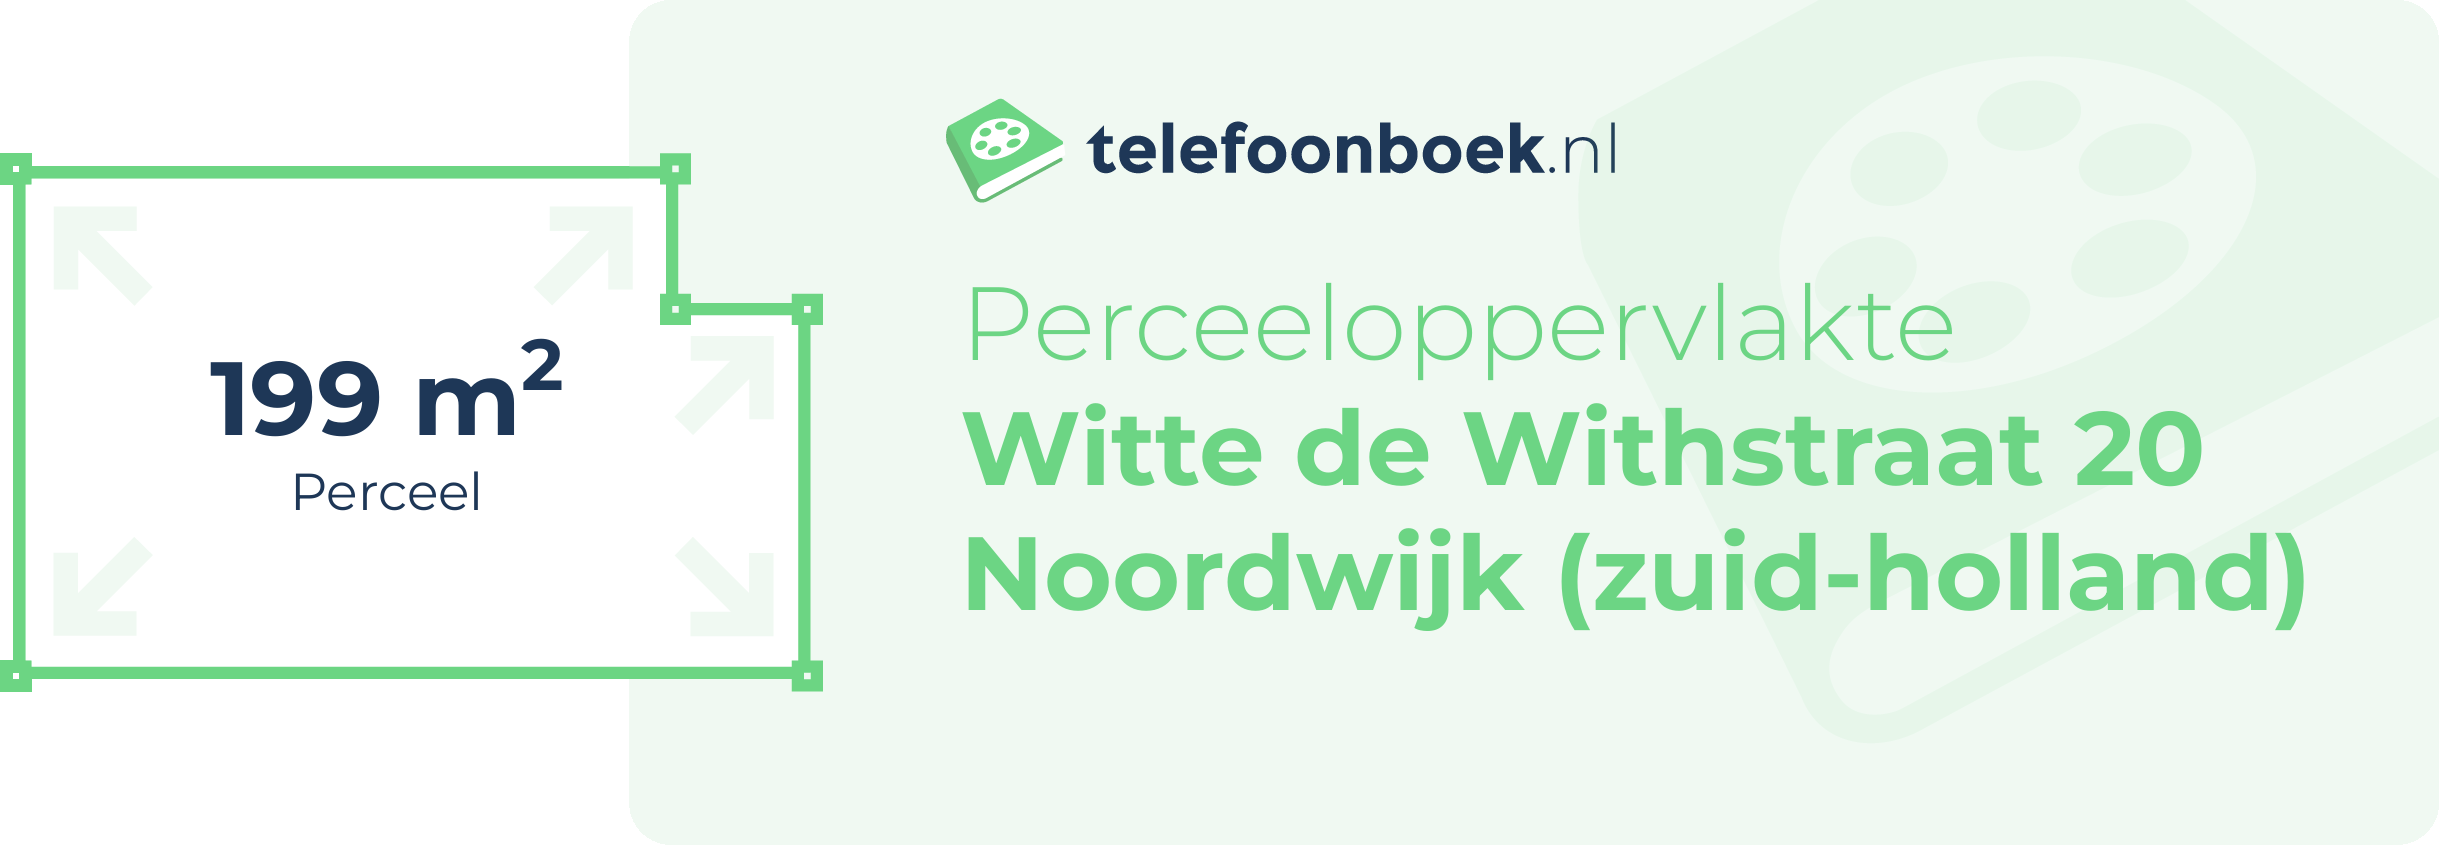 Perceeloppervlakte Witte De Withstraat 20 Noordwijk (Zuid-Holland)